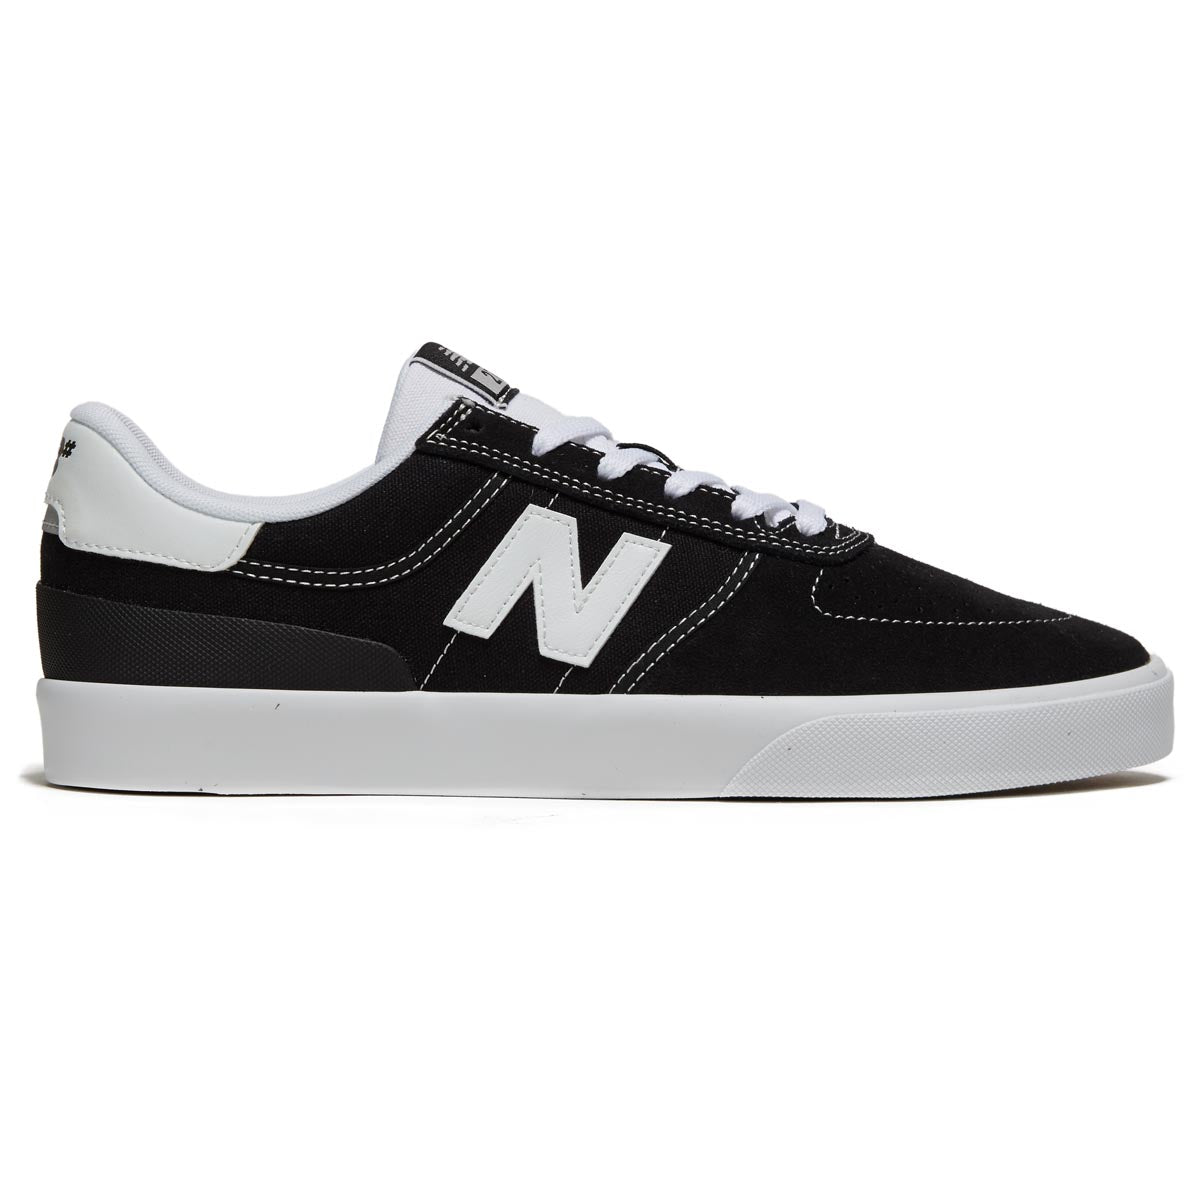 New Balance 272 Shoes - Black image 1